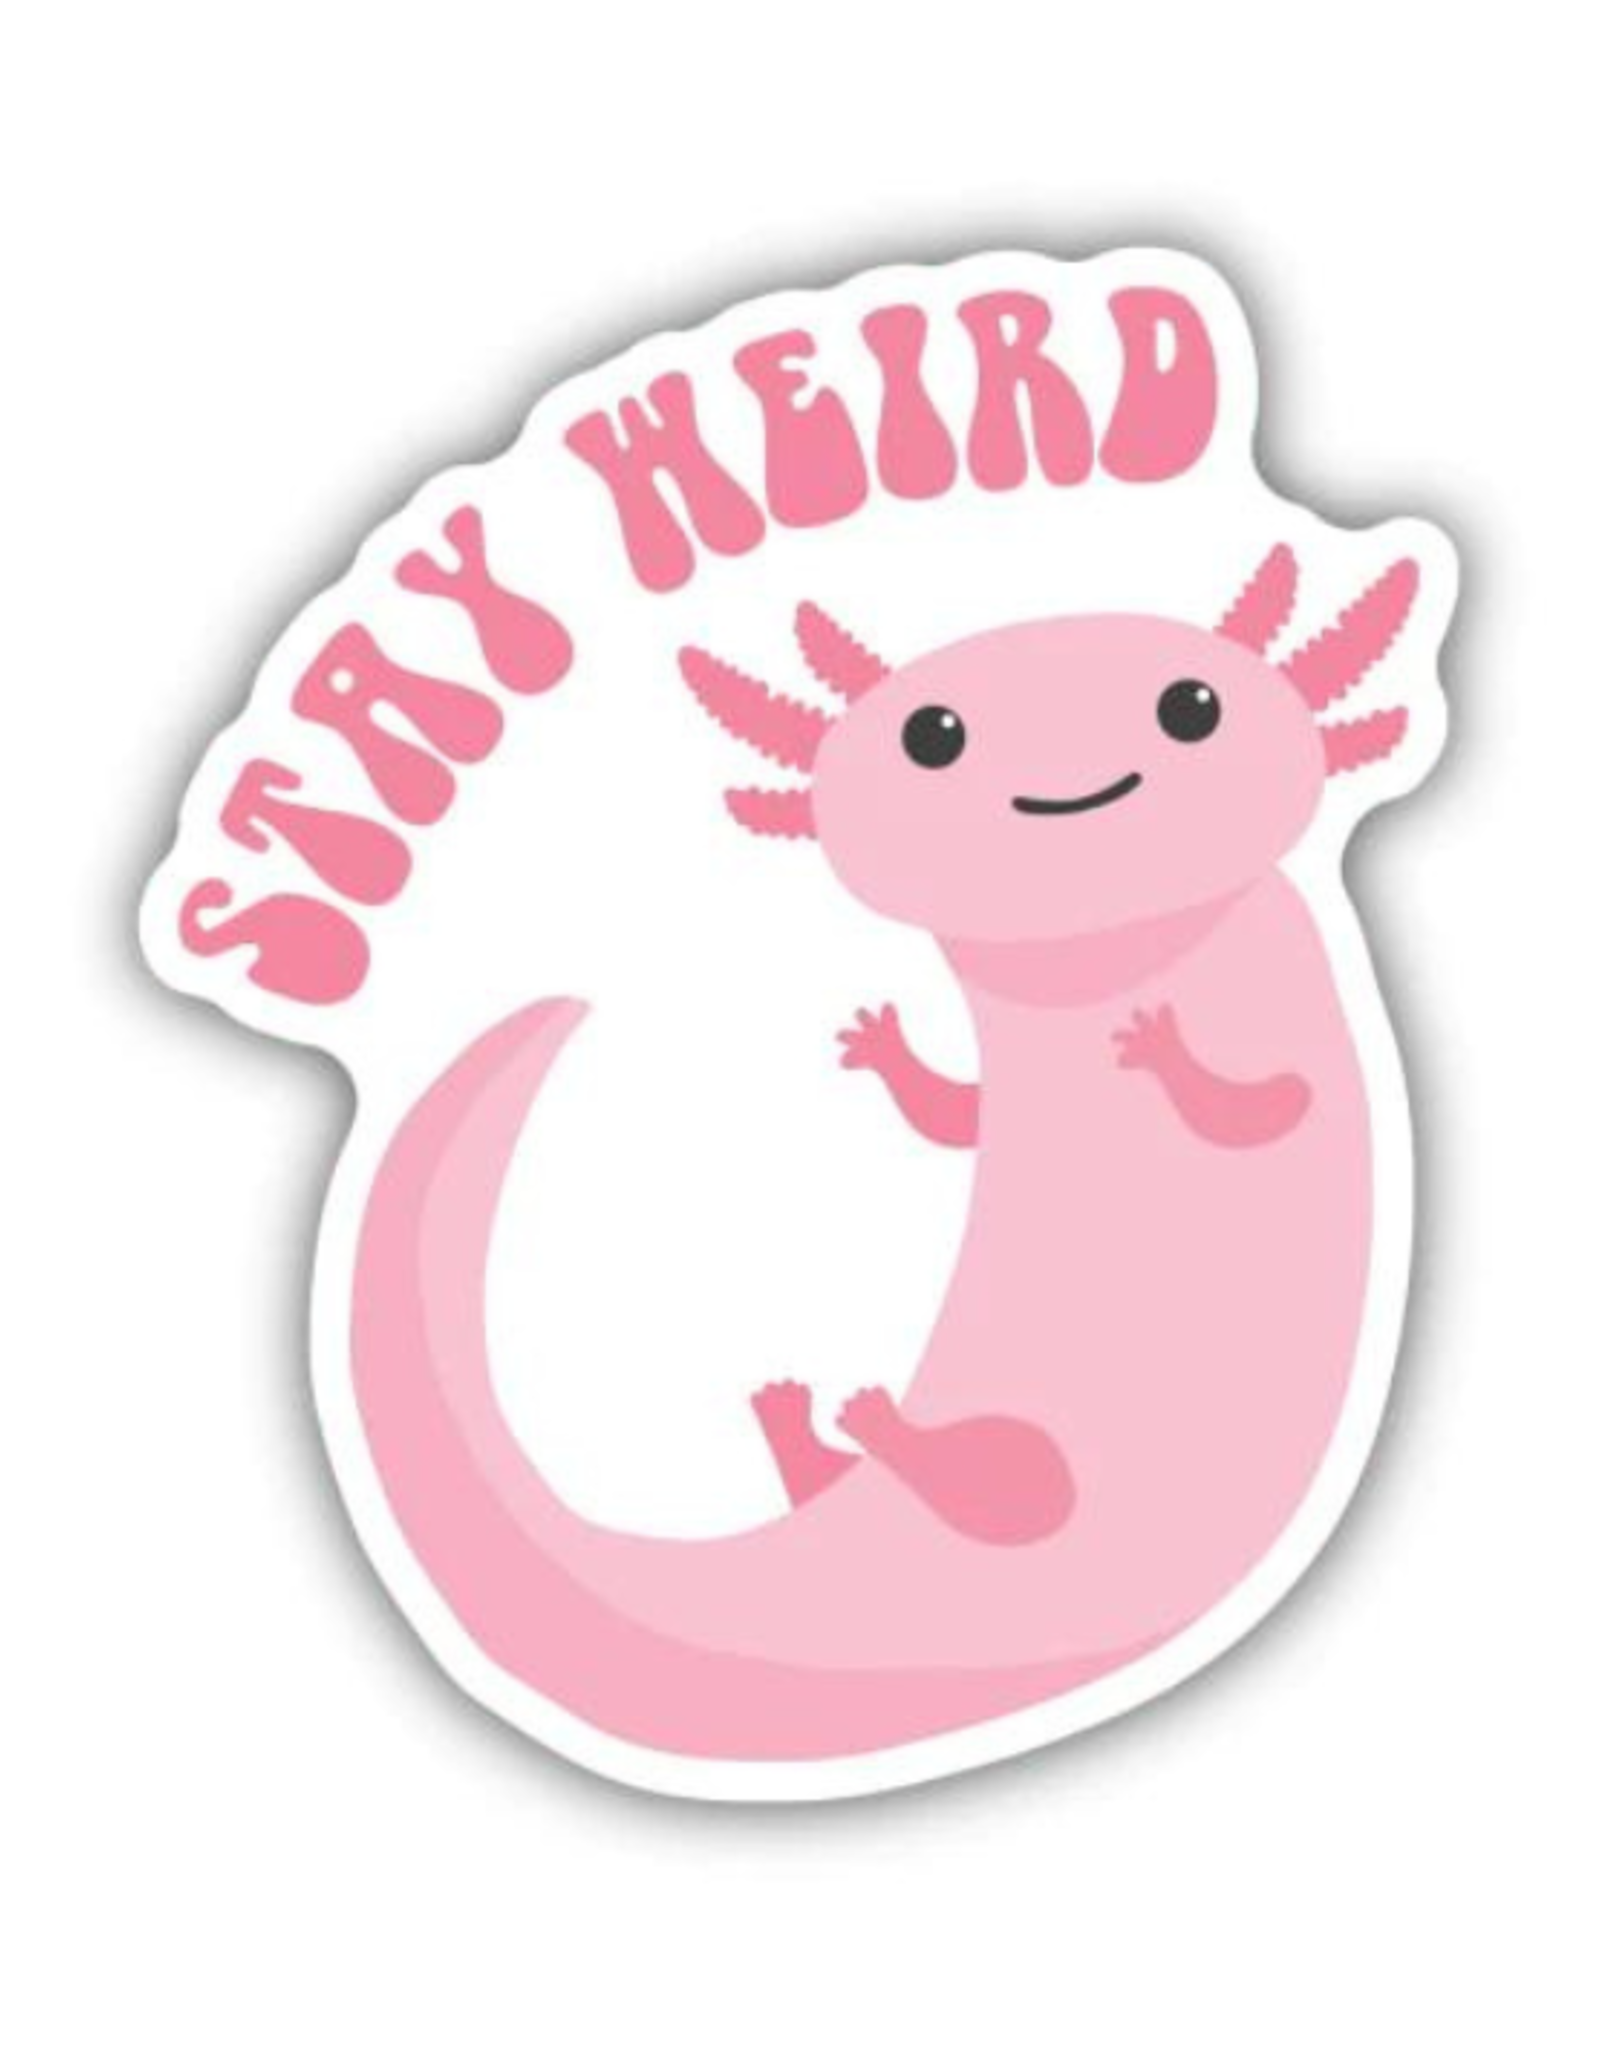 Stickers Northwest Inc. Stickers Northwest Inc - Stay Weird Axolotl Sticker